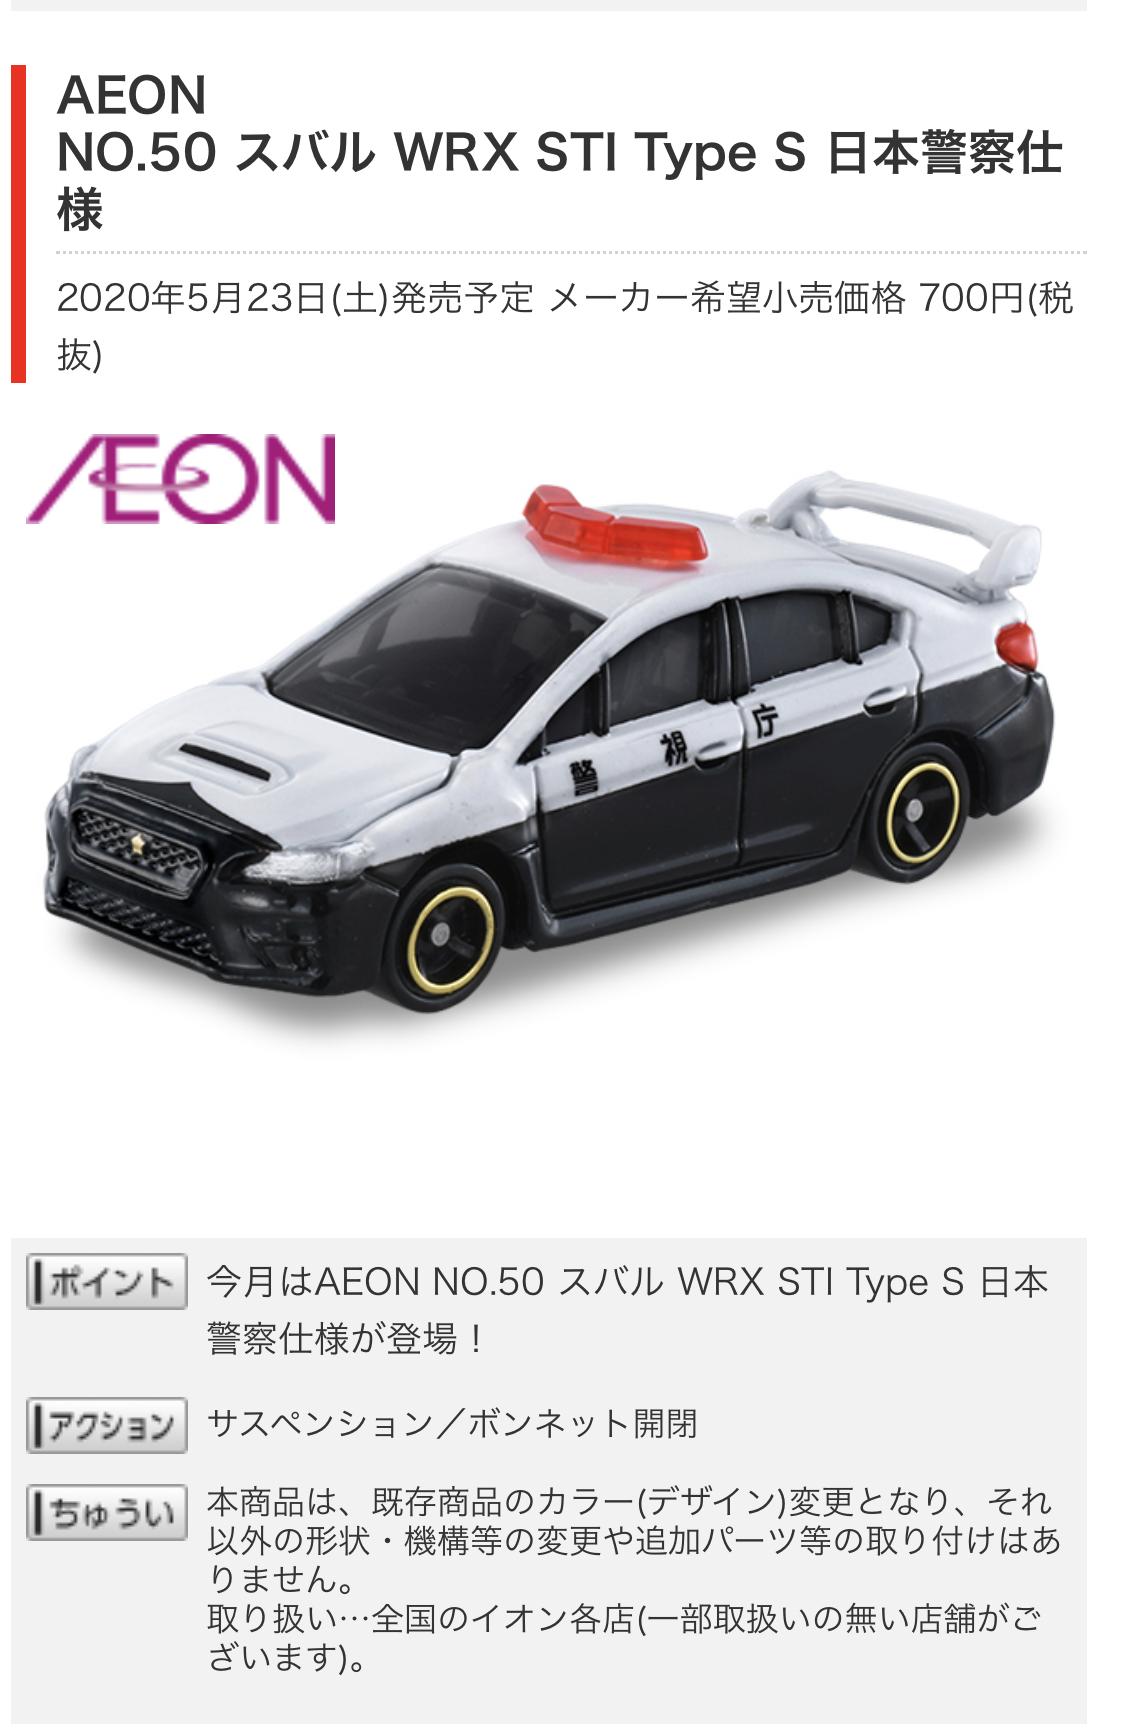 トミカ・AEON スバル WRX STI Type S 日本警察仕様』 ?✨ - サークロコのだらだらBASS釣り日記